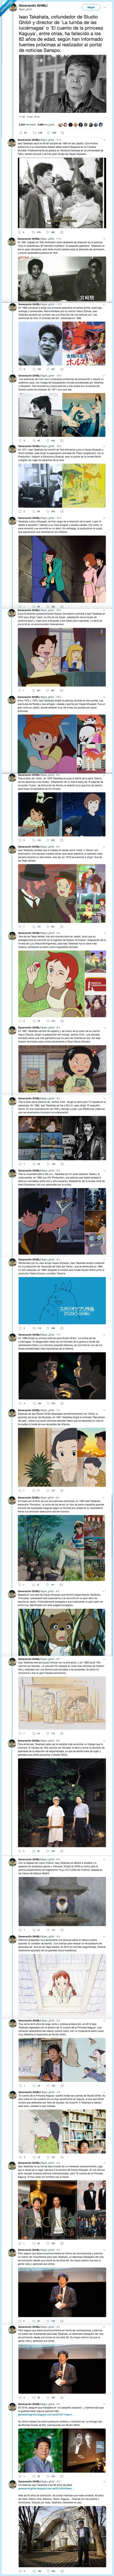 485911 - Le dedican este hilo a Isao Takahata socio de Miyazaki en Studio Ghibli, por @gen_ghibli